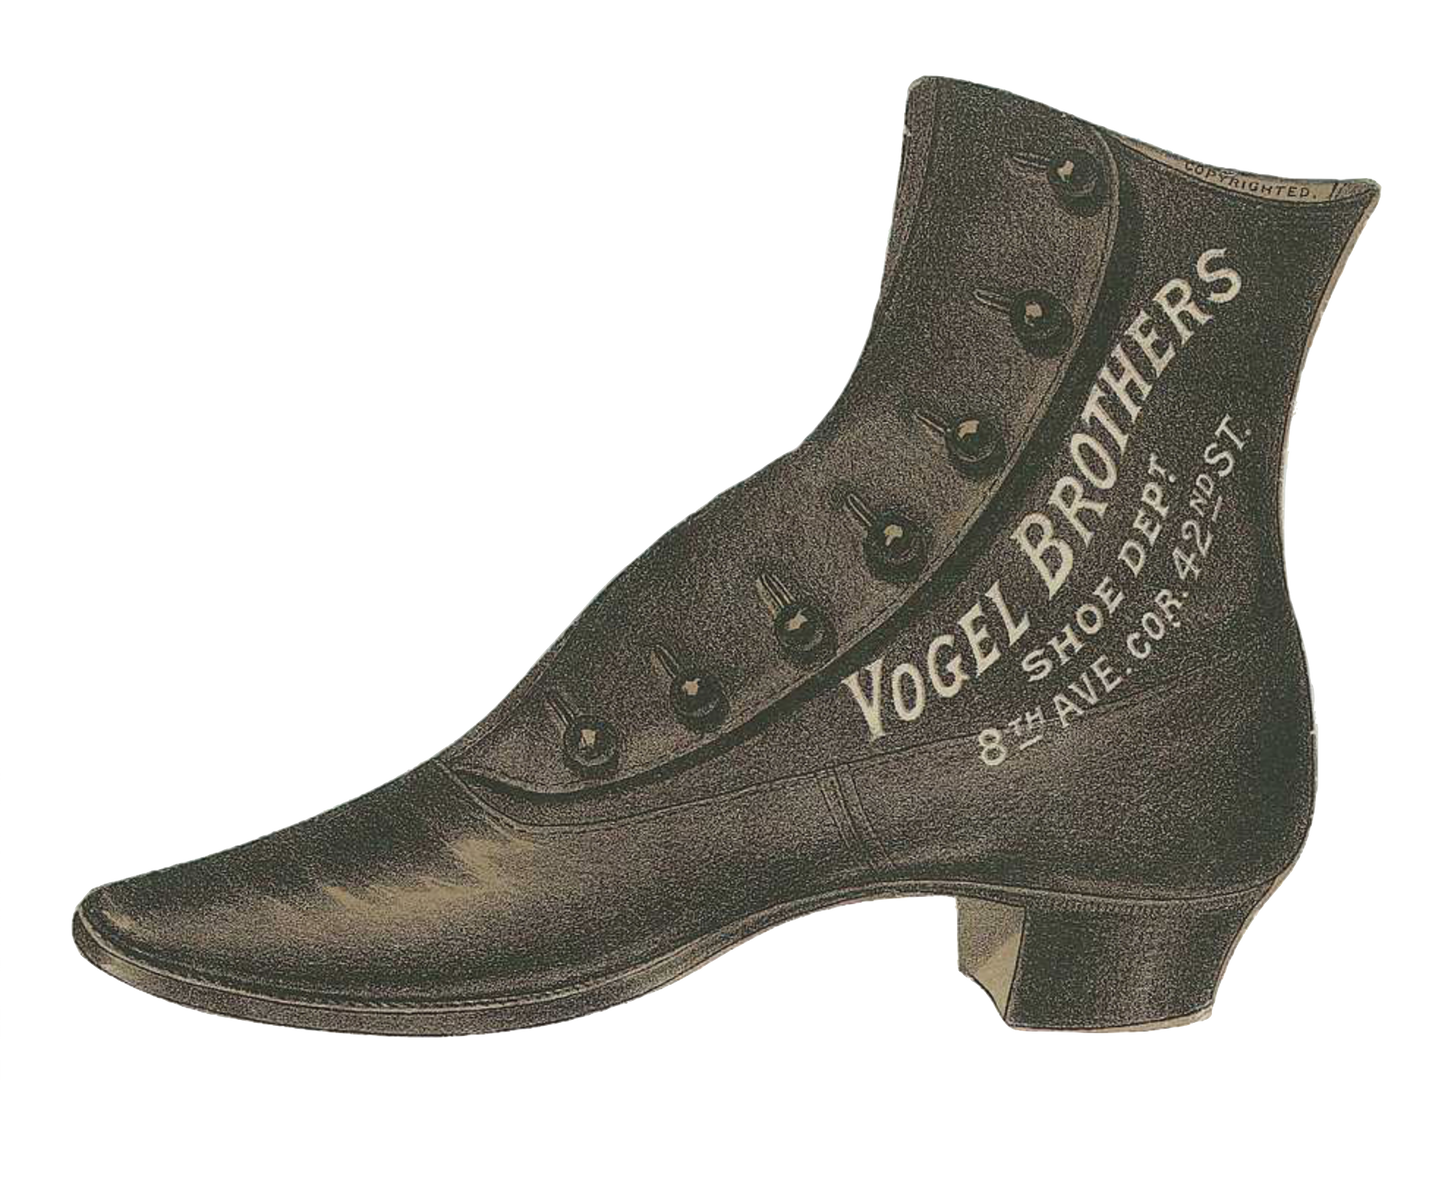 Vogel Brothers - Antique Shoe